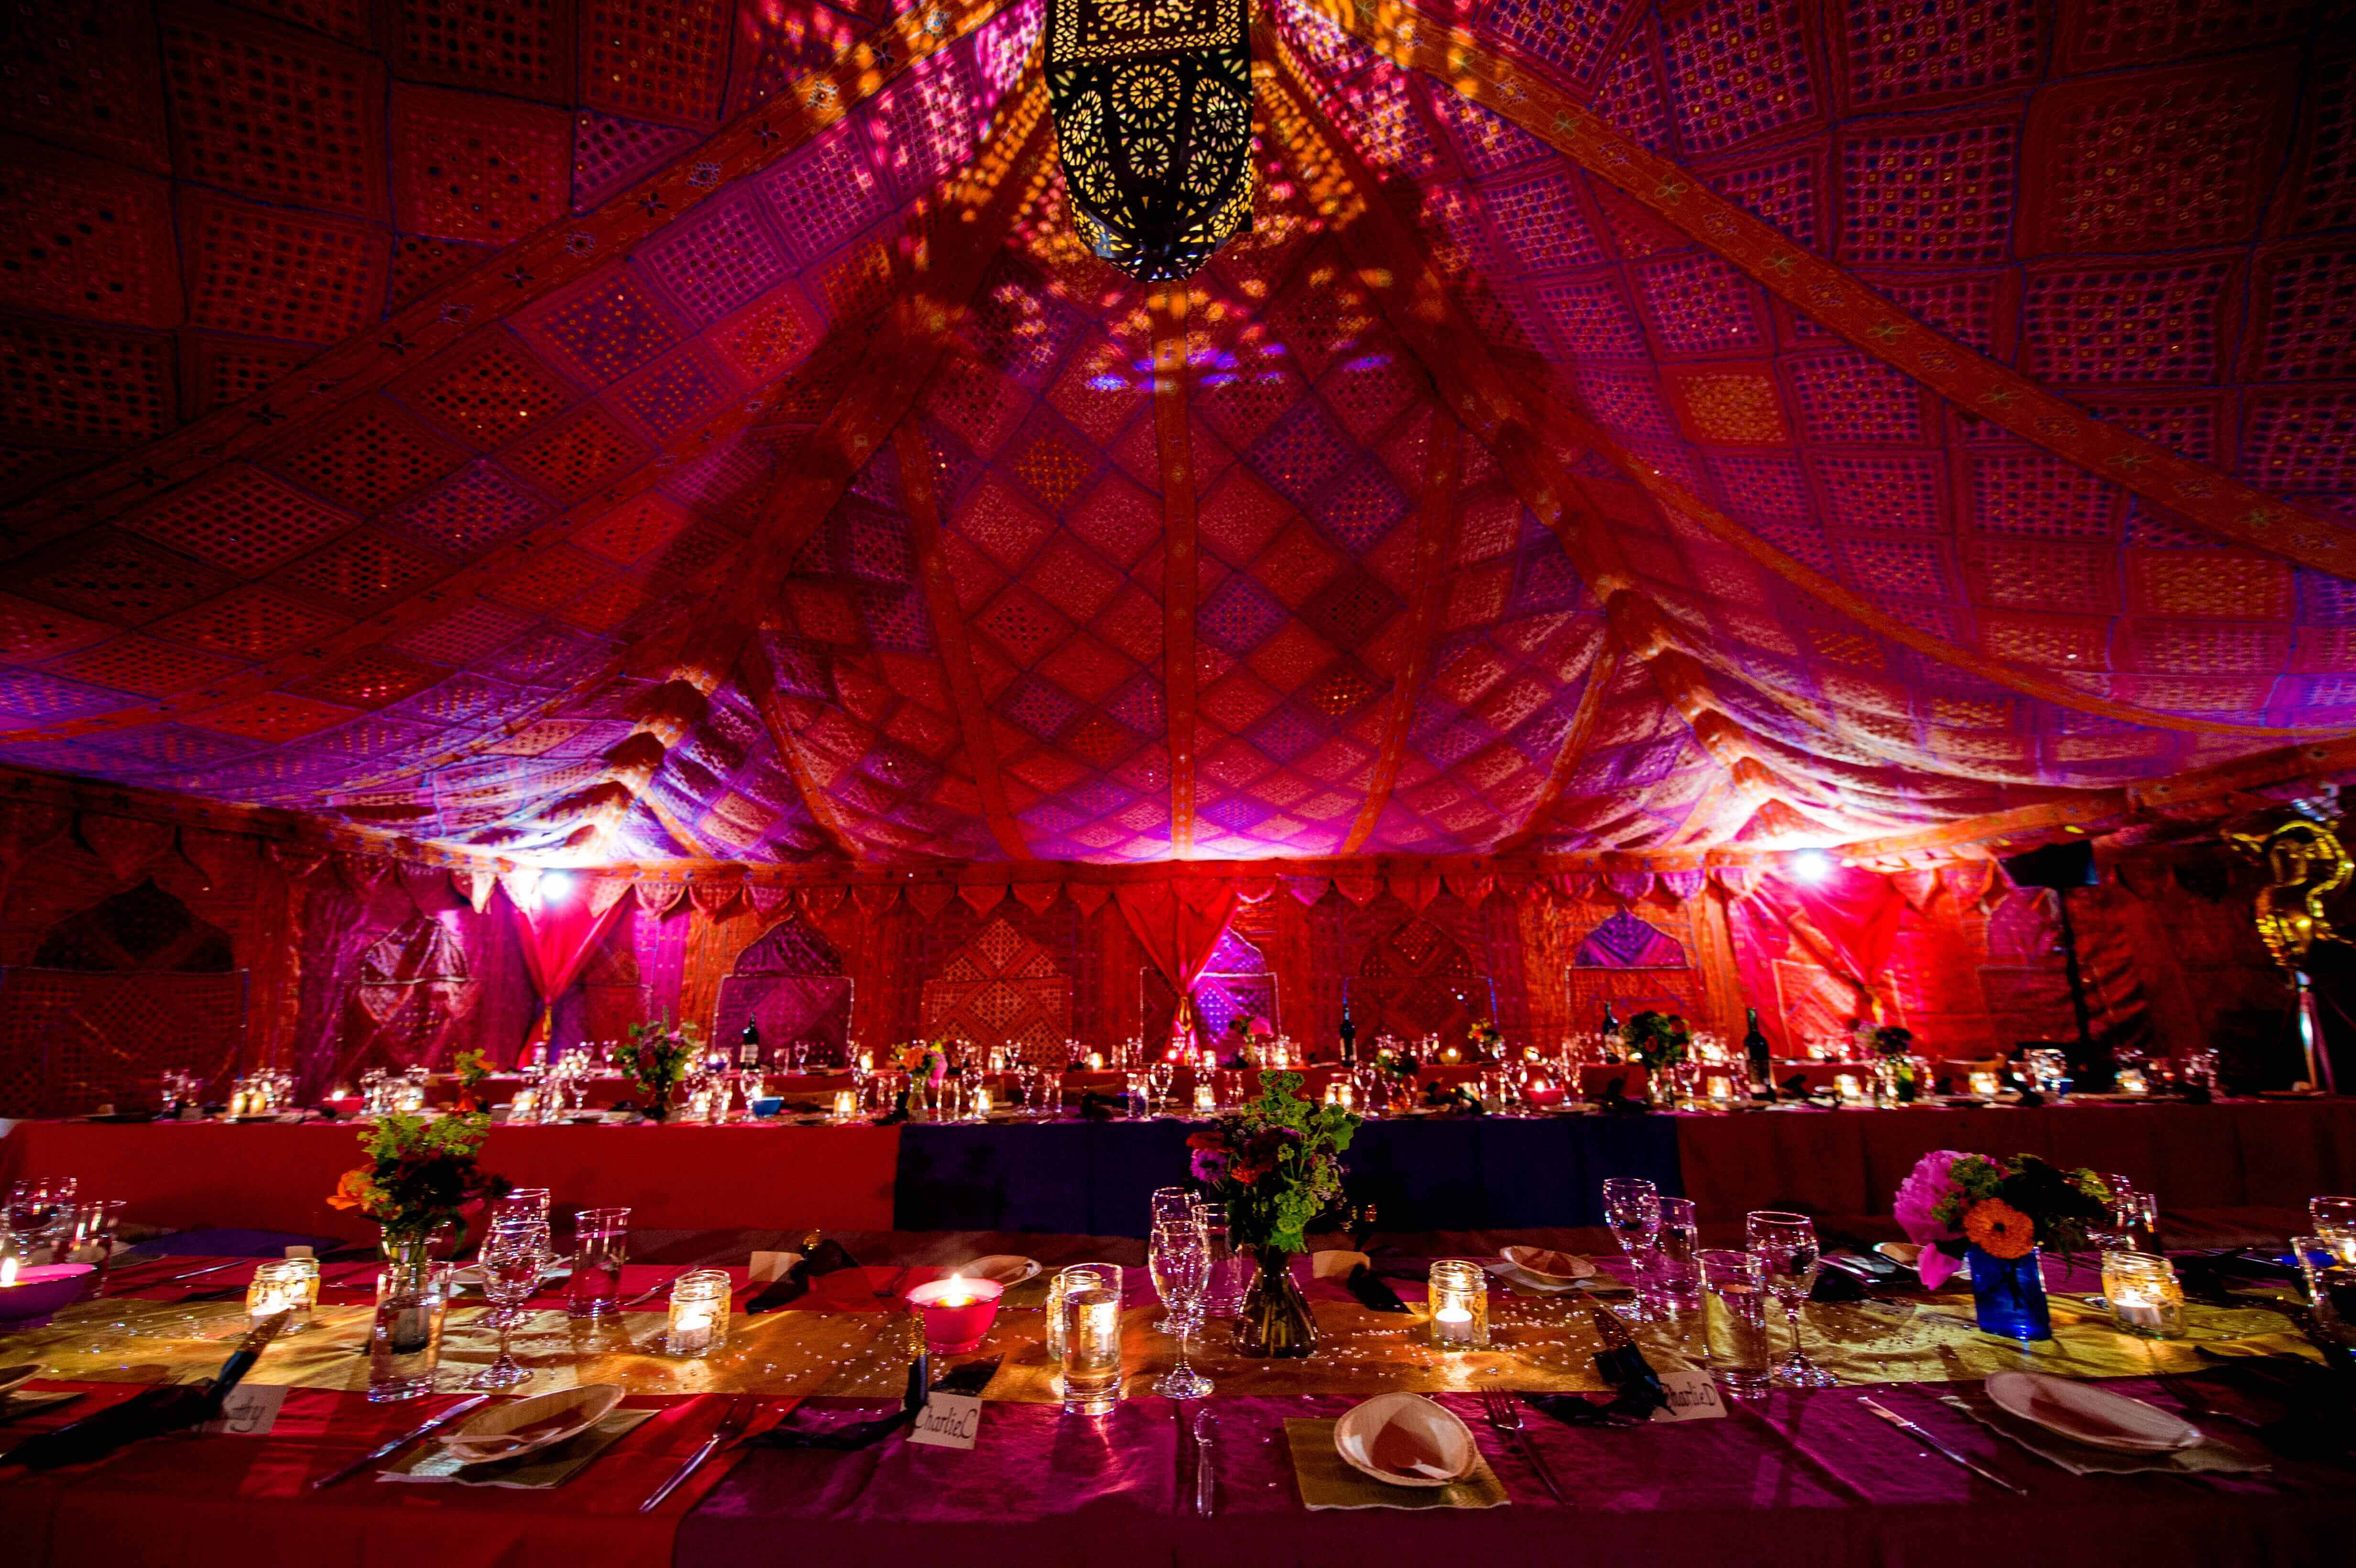  Bollywood  Themed Party  The Arabian Tent Company